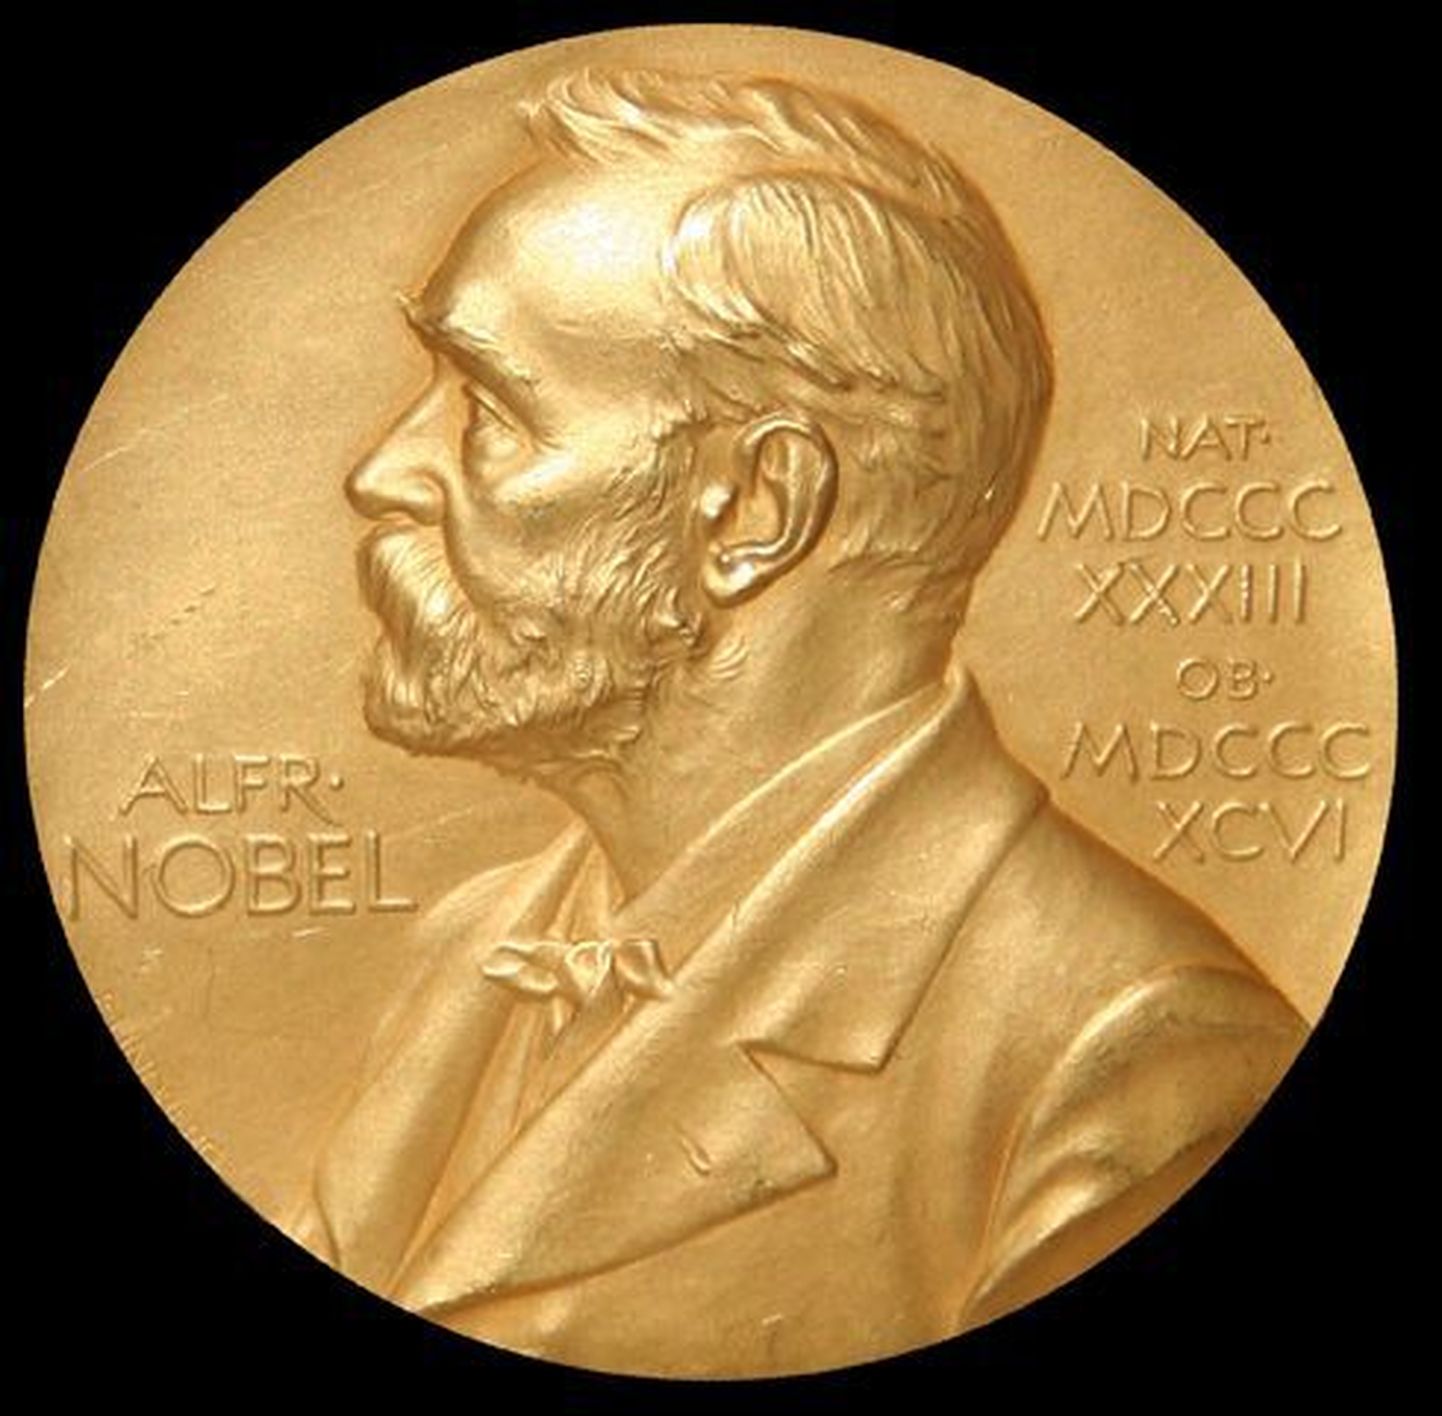 Täna kuulutatakse välja meditsiini Nobeli saaja